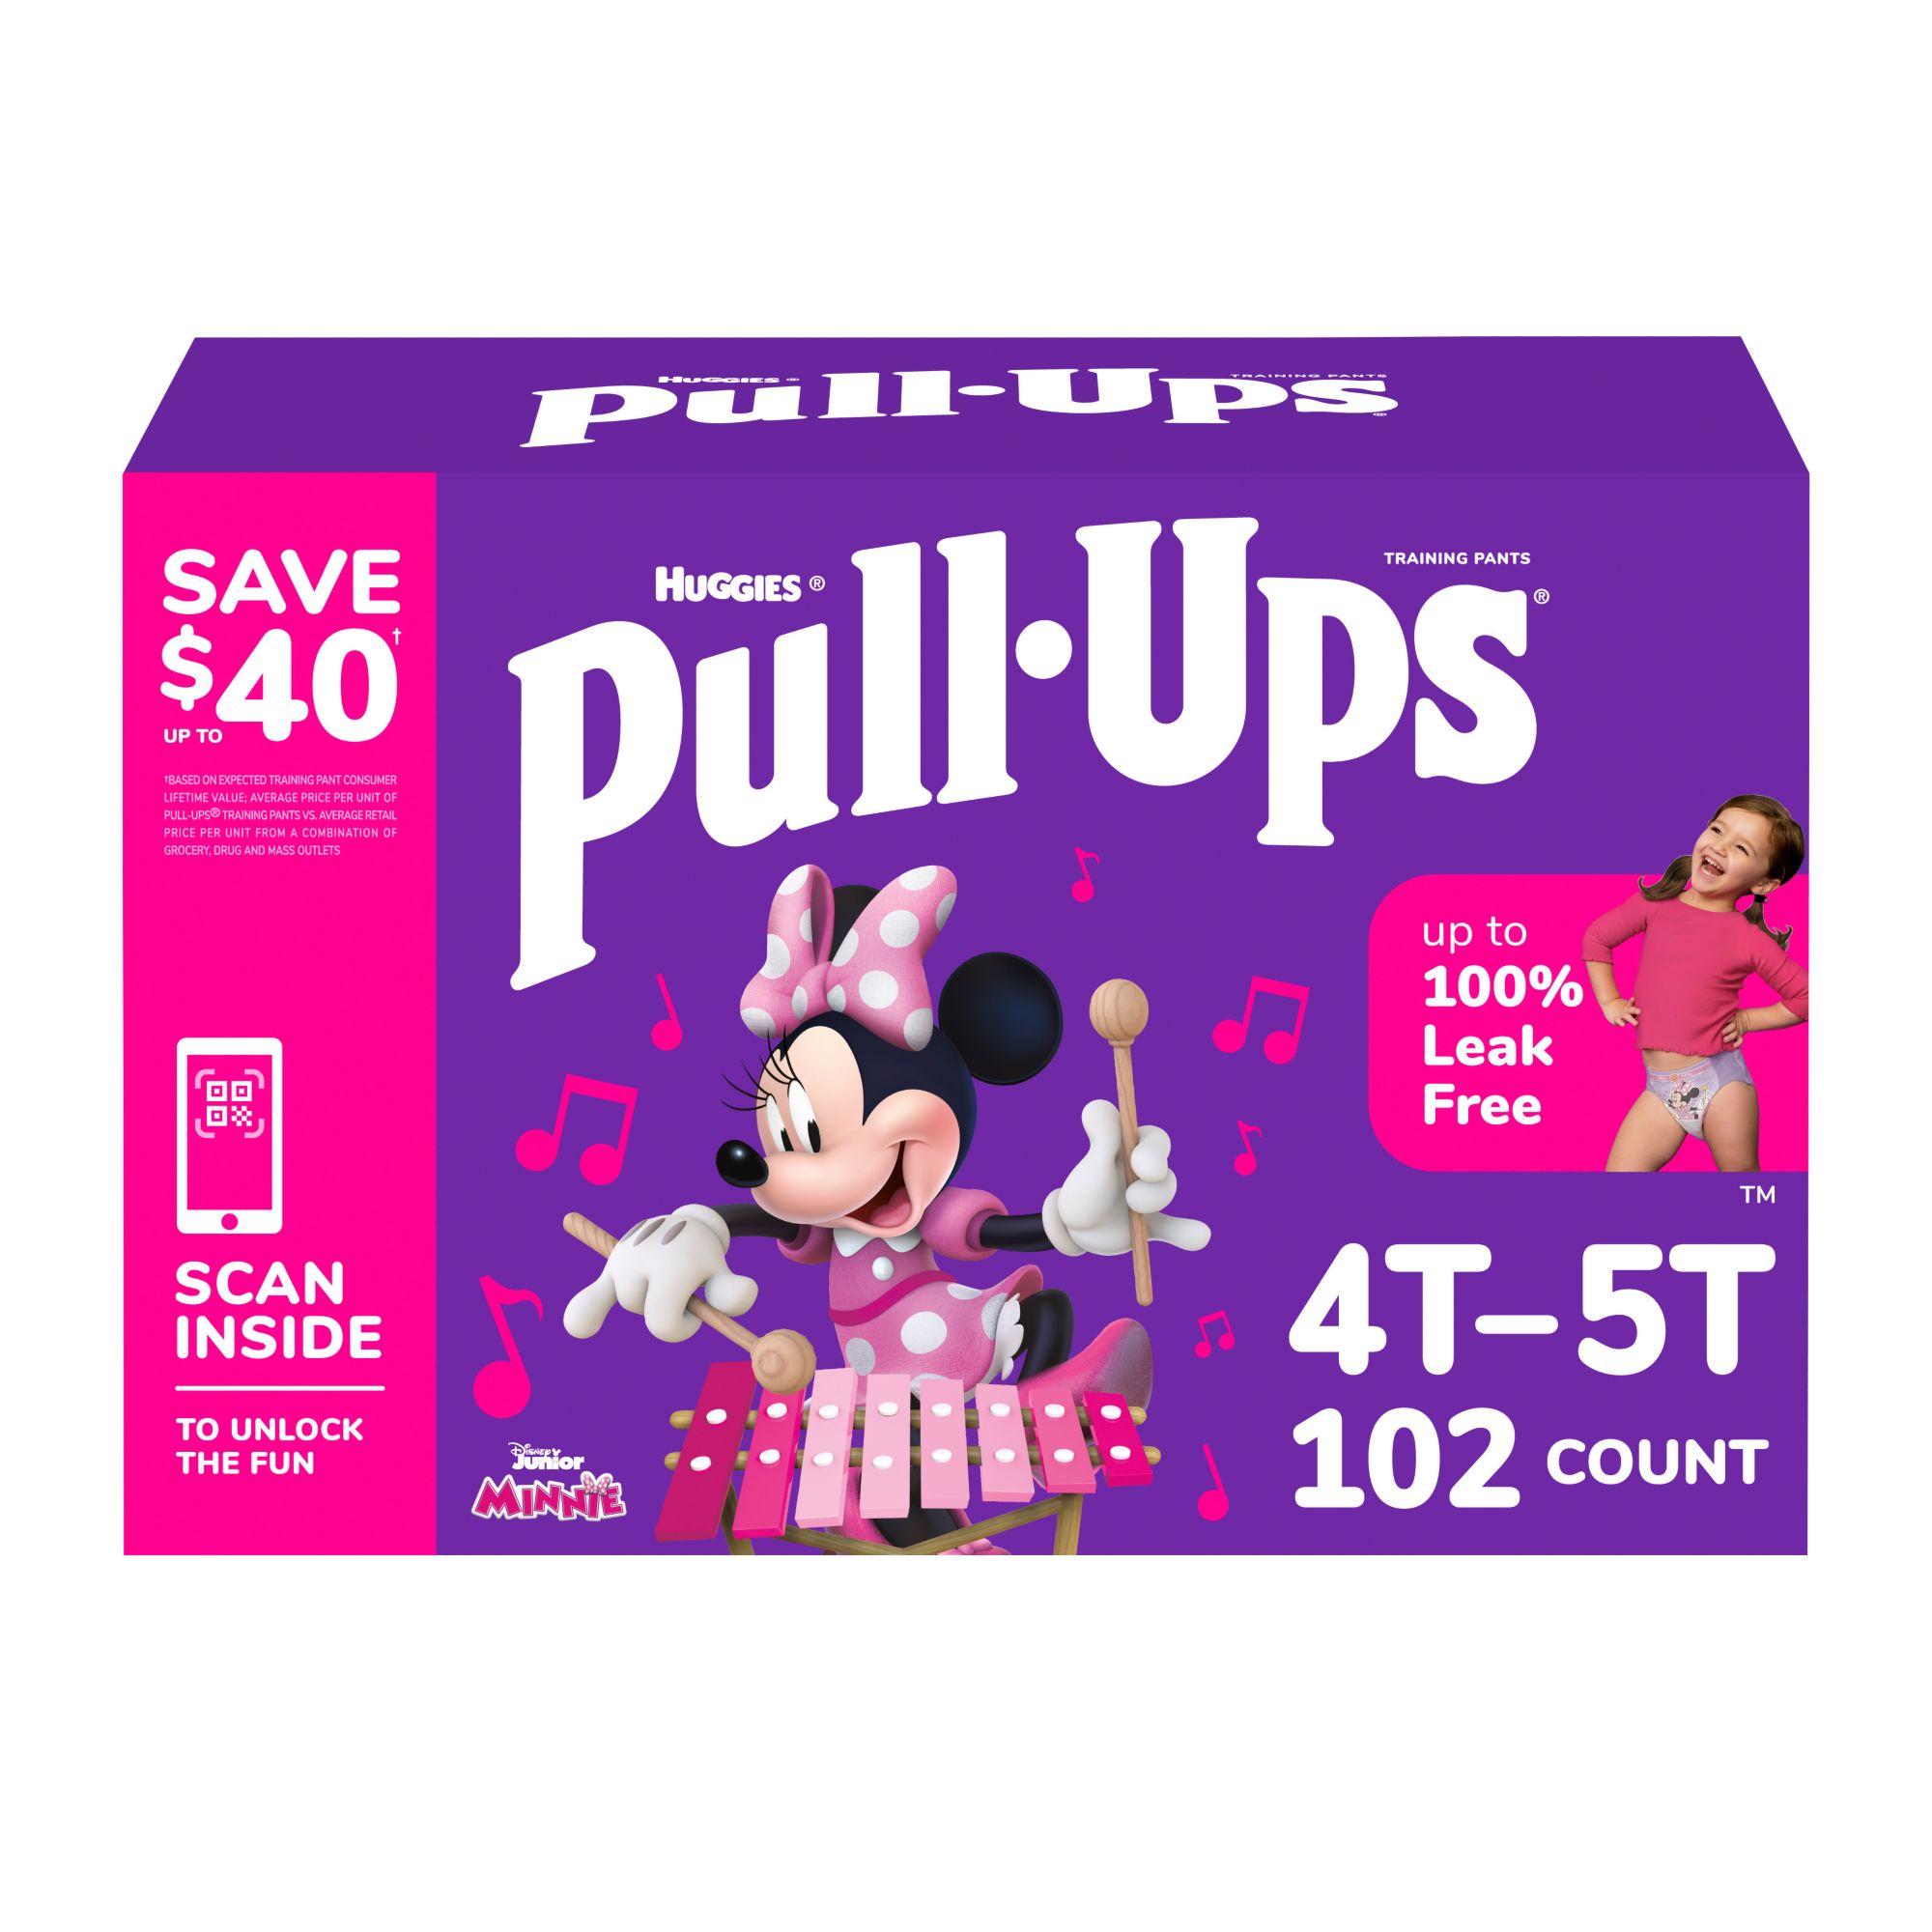 Zegenen discretie Vliegveld Huggies Pull-Ups Girl's Training Pants - BJs Wholesale Club